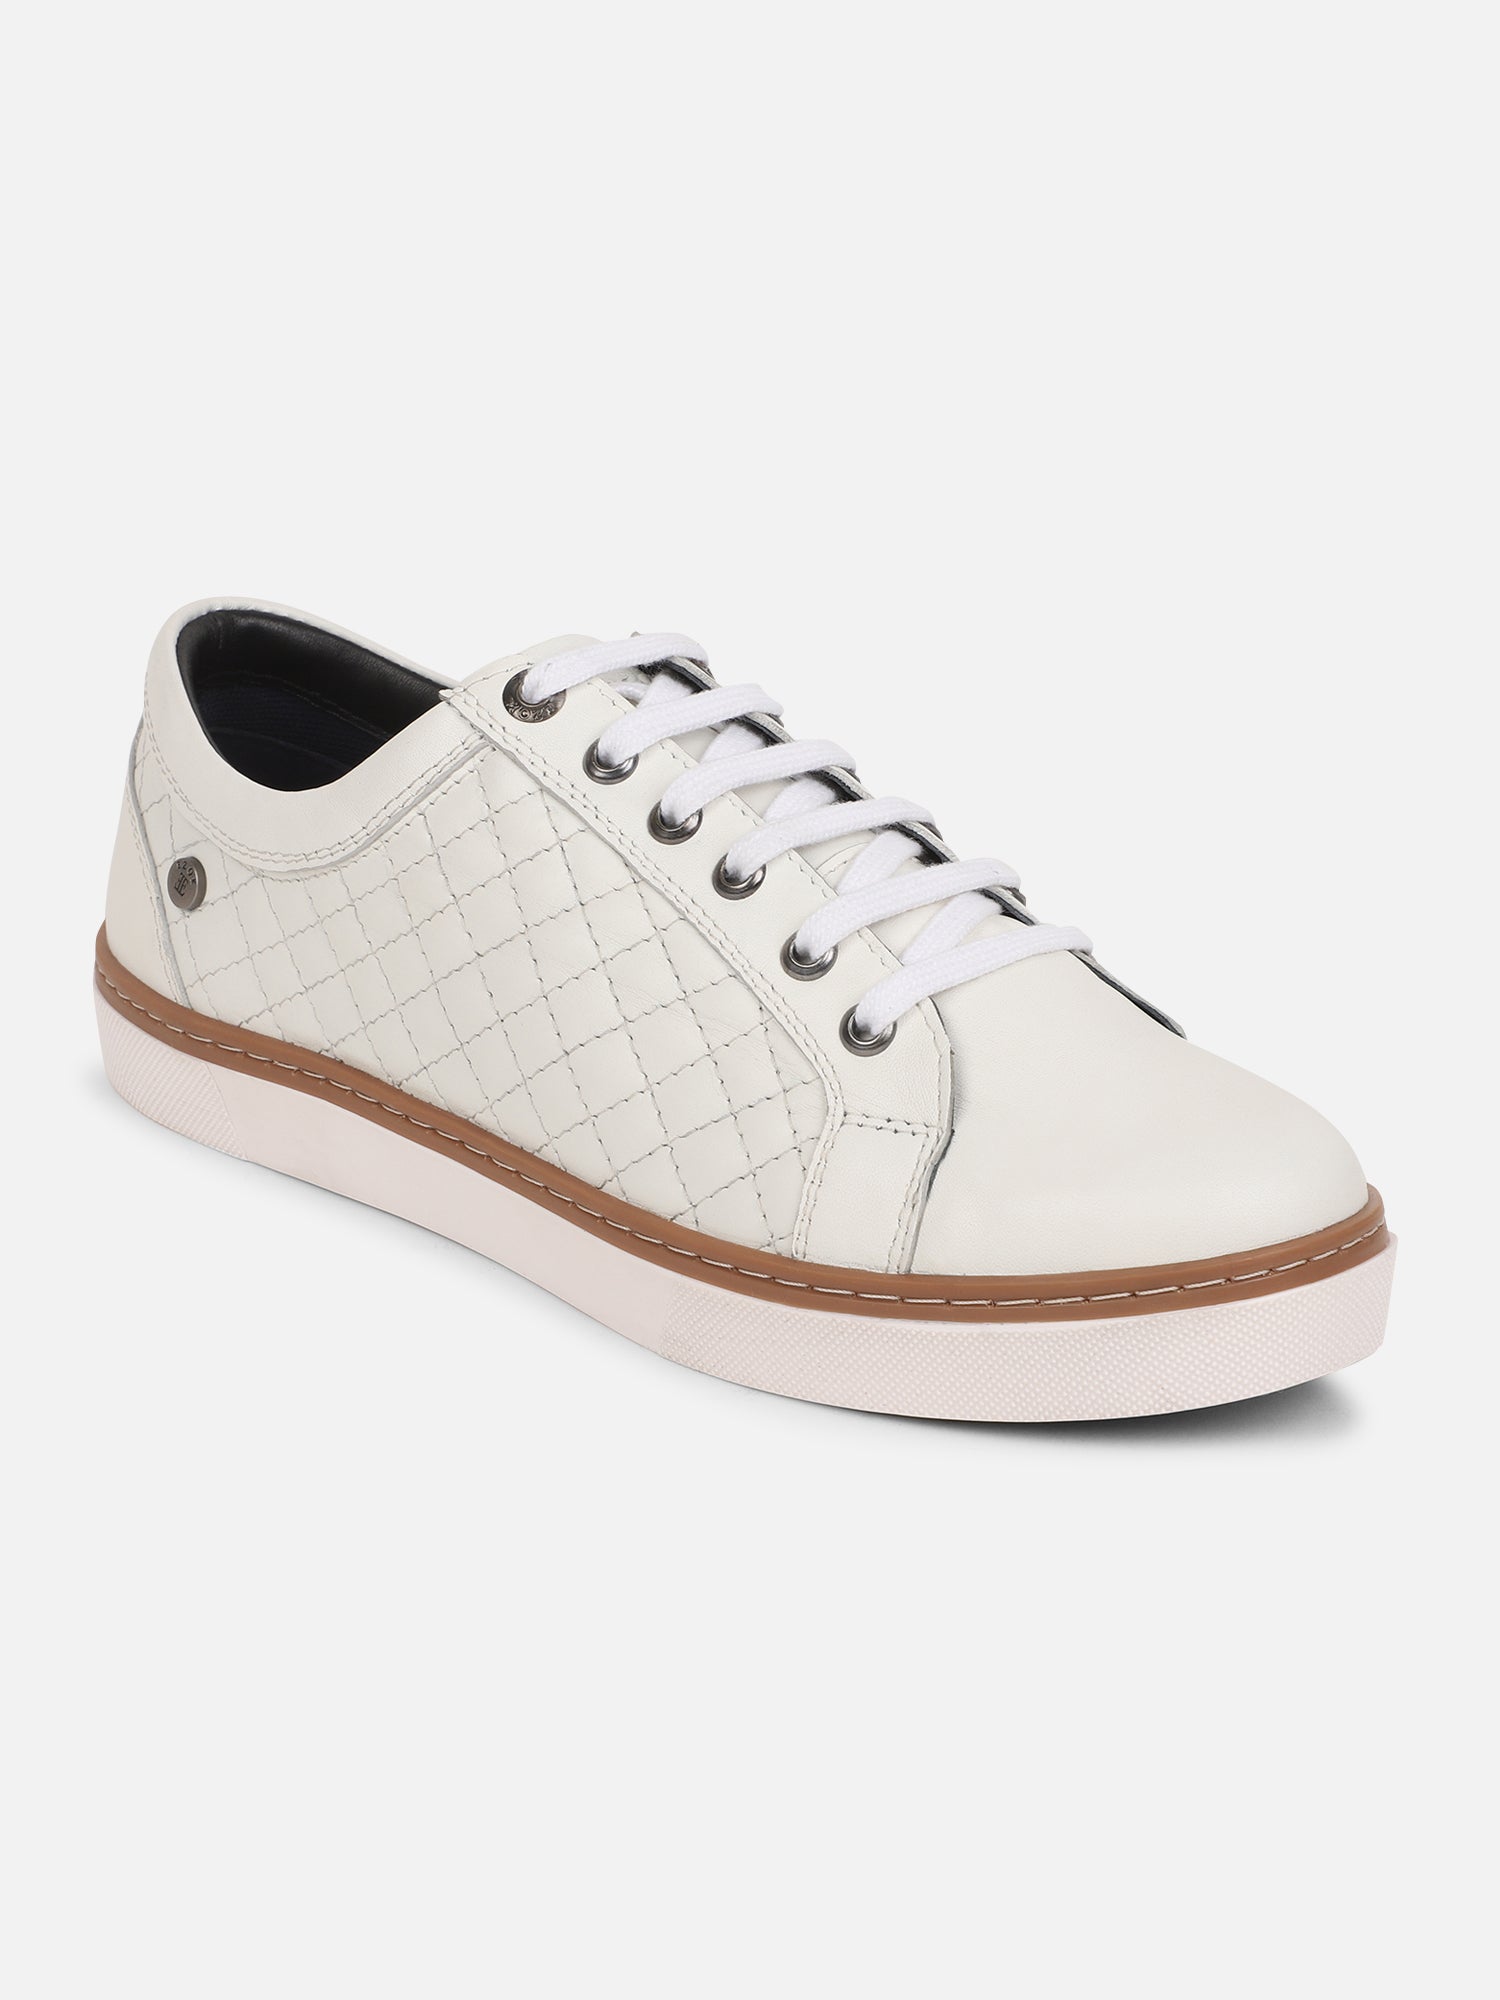 Ezok Men Casual Leather Sneaker ( White )